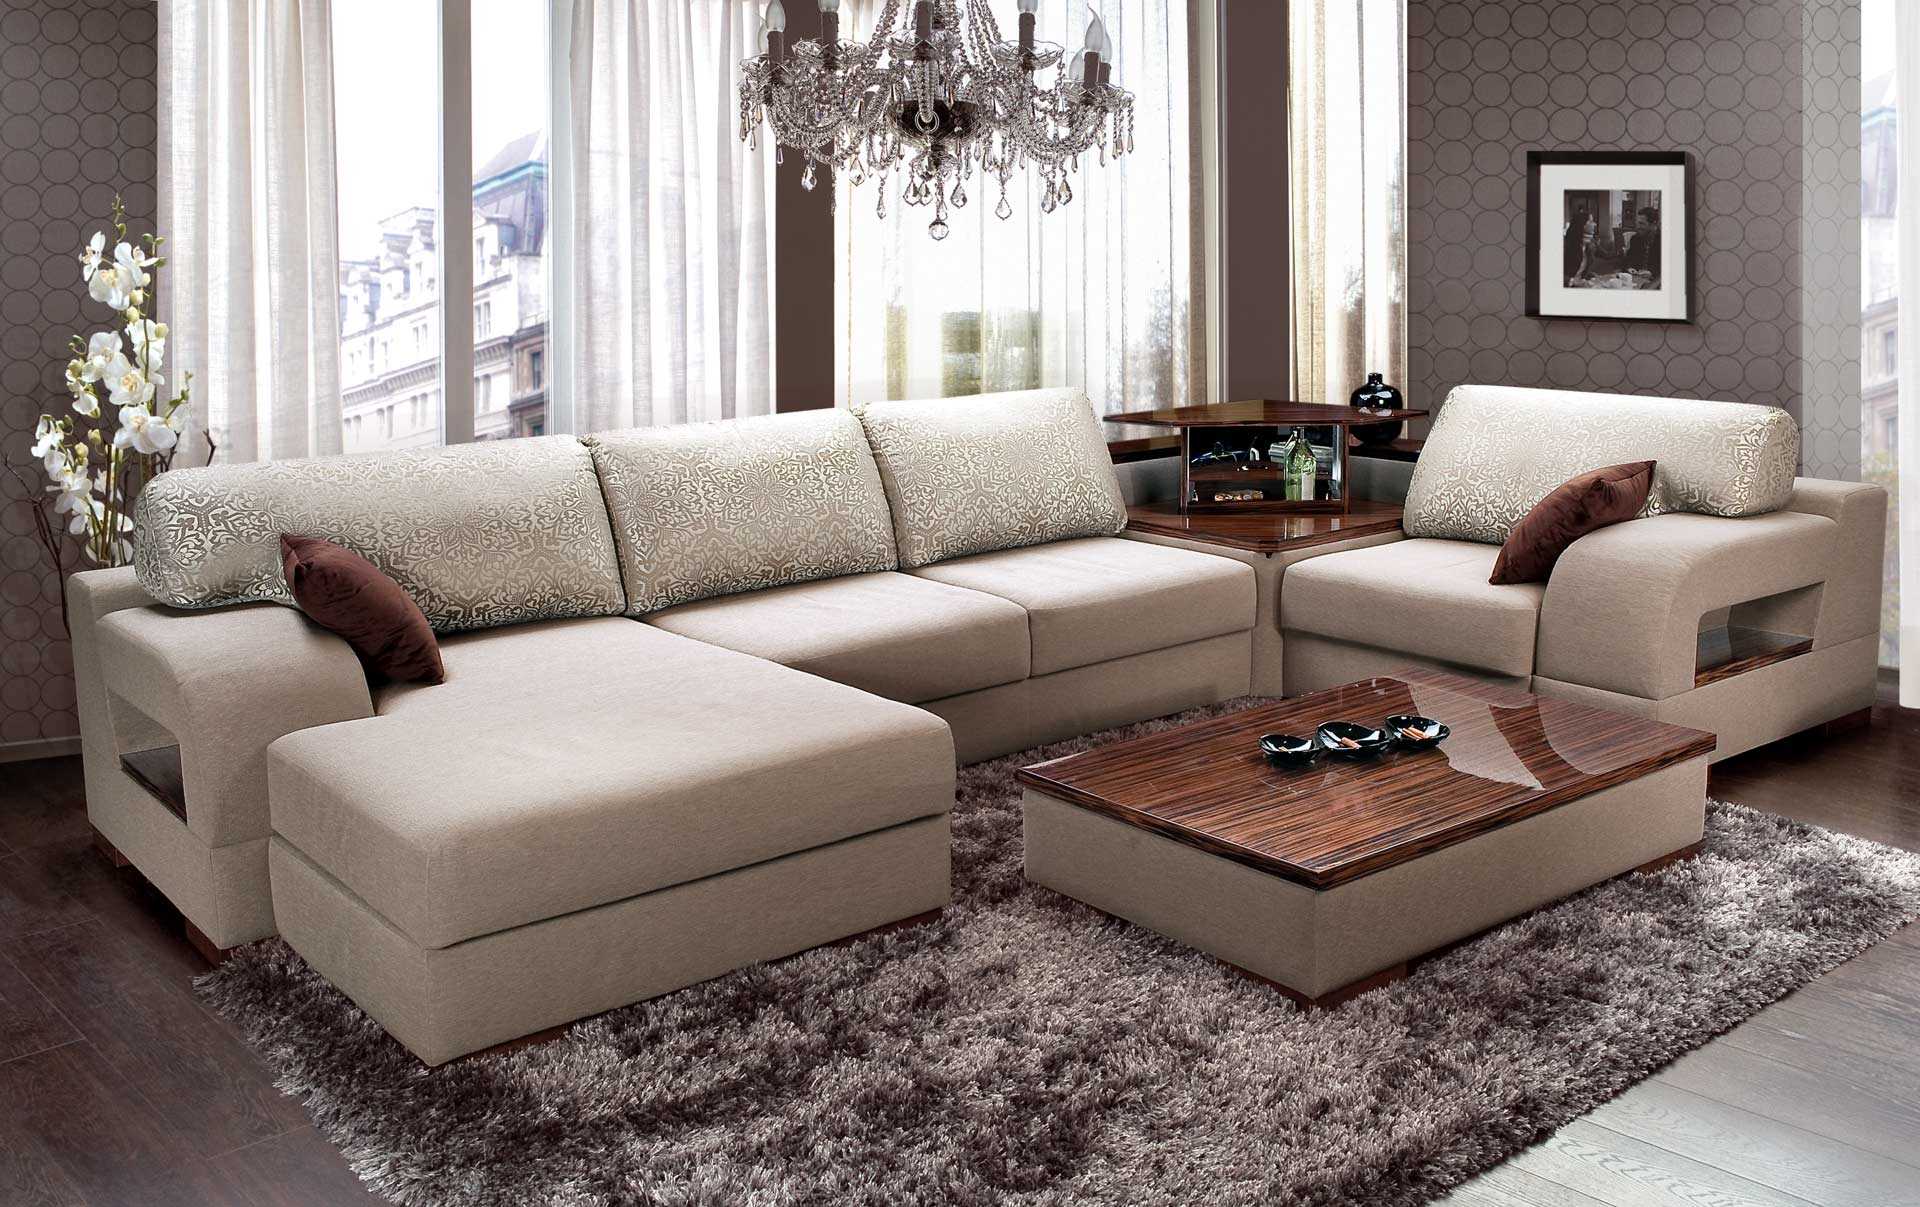 version du design original de la chambre avec un canapé